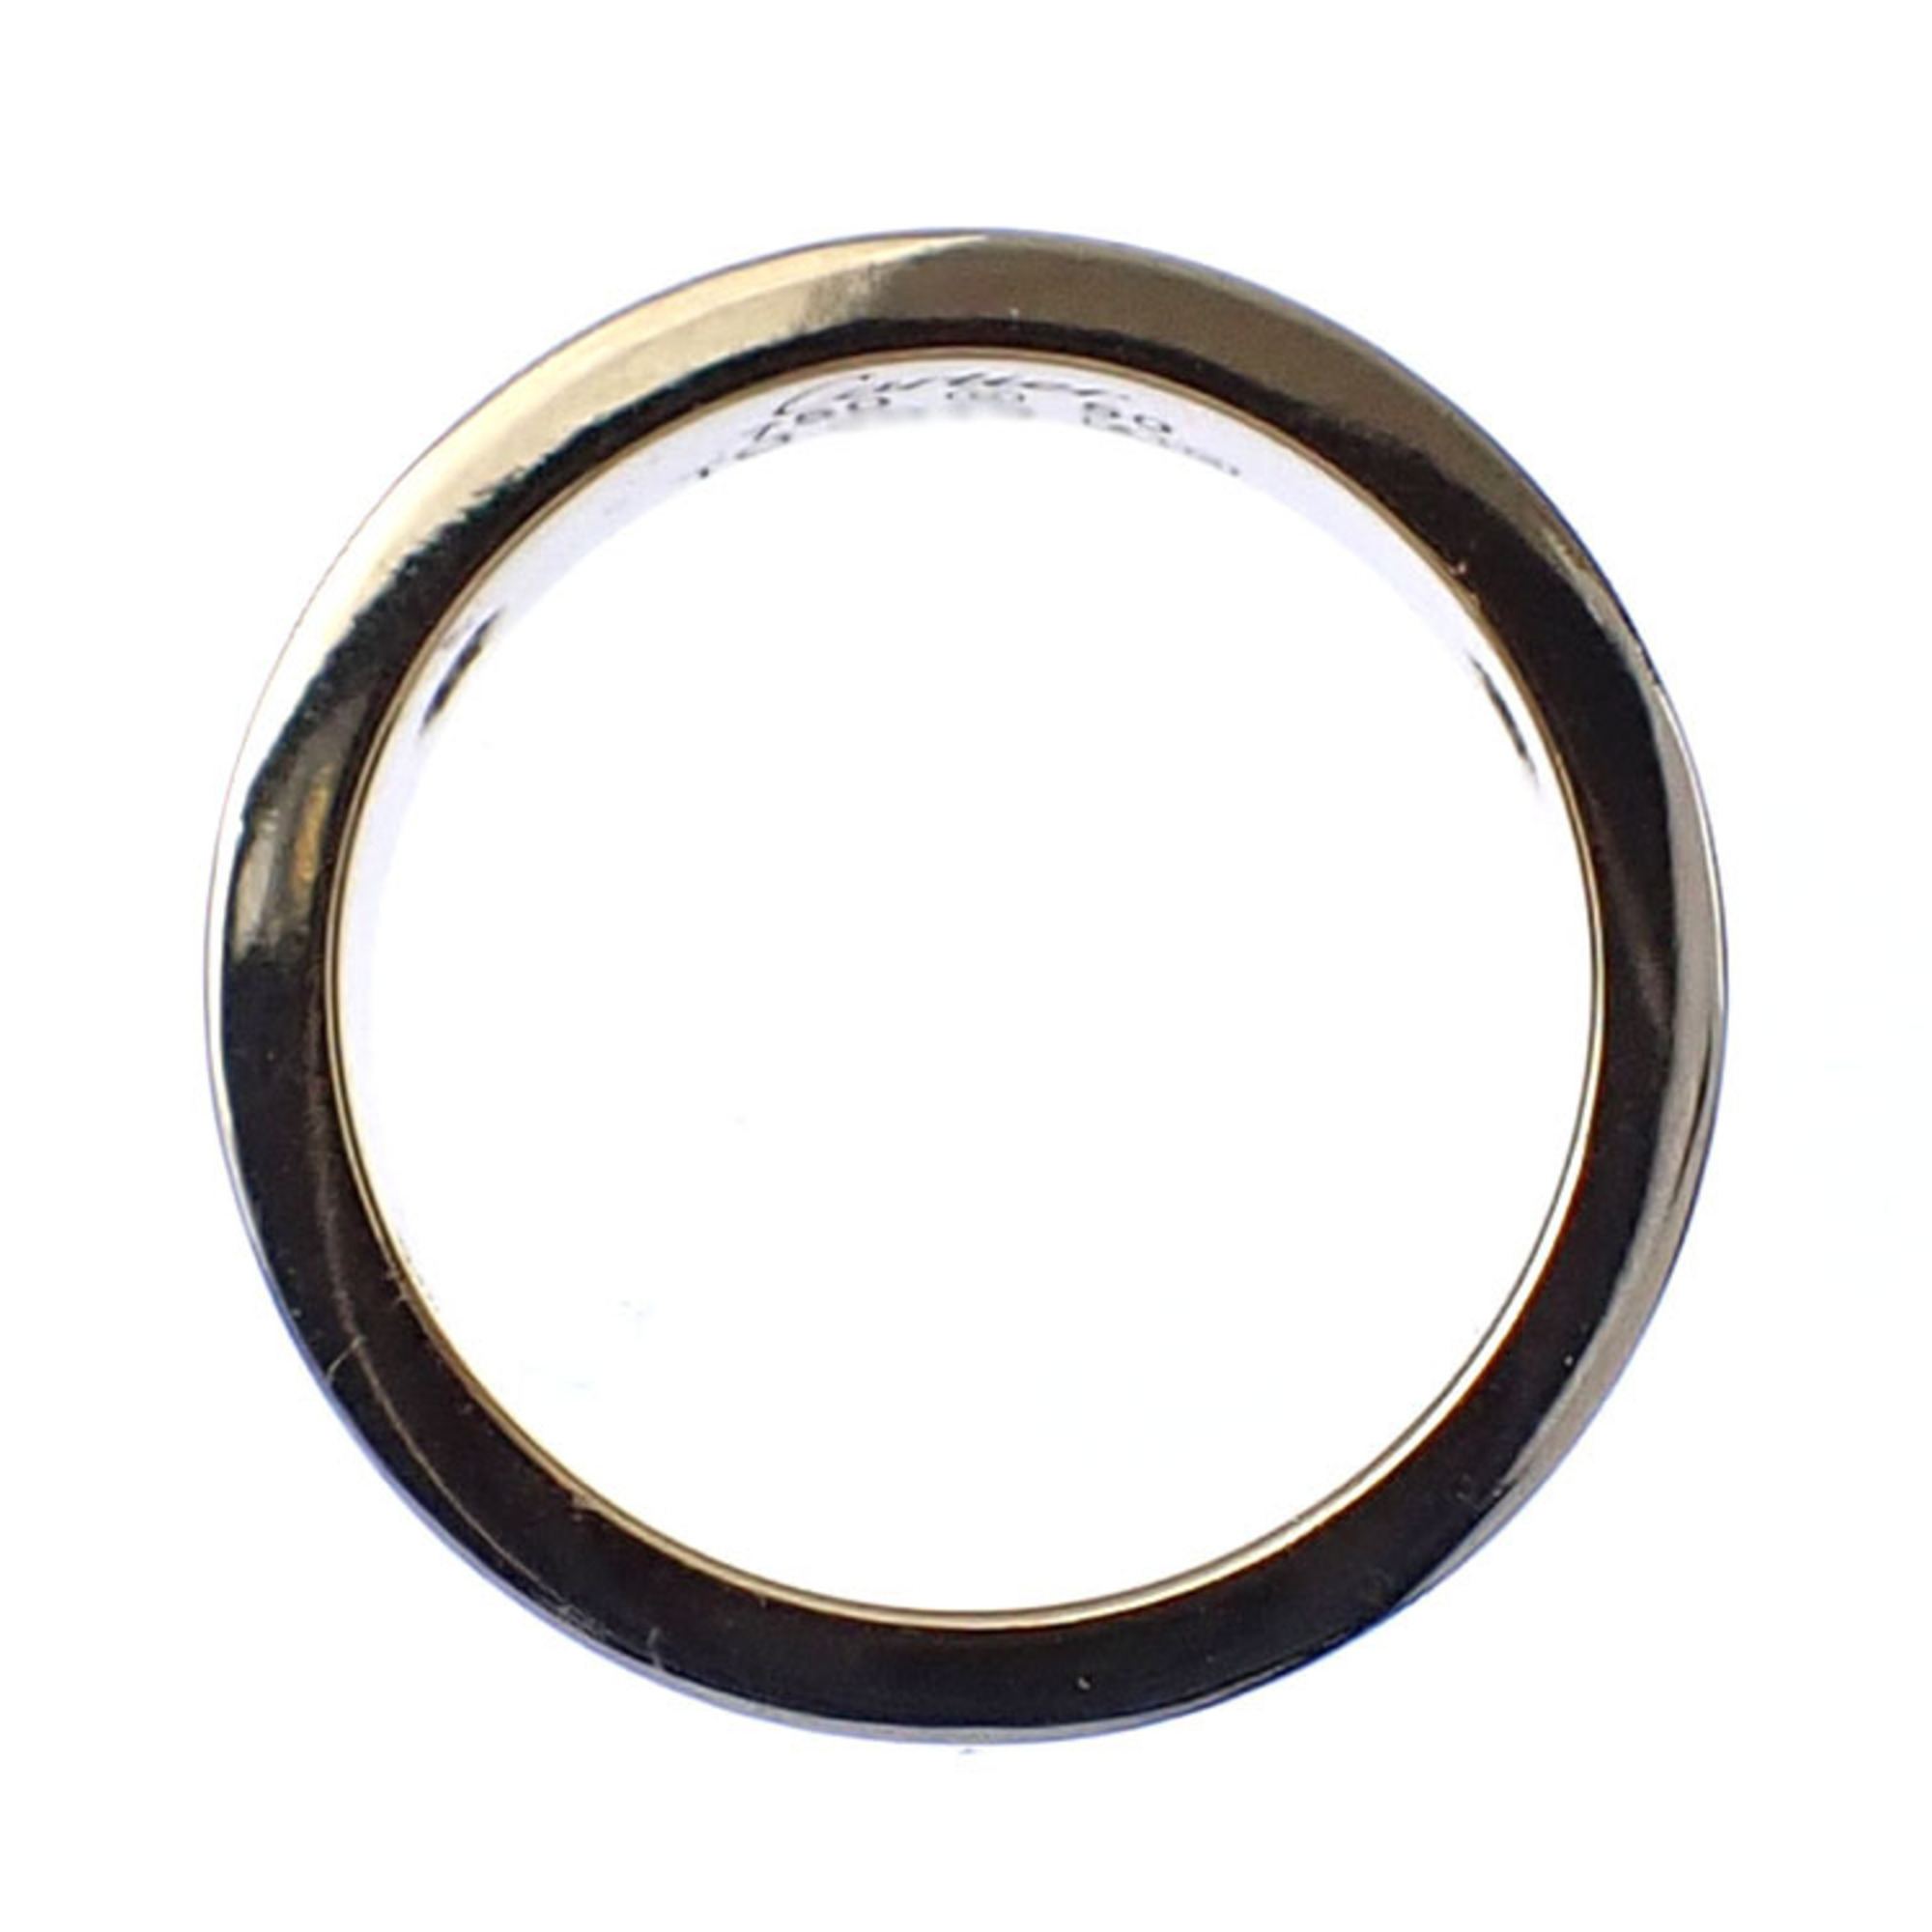 Cartier Love Ring for Women, K18WG, Size 10, #50, 8.7g, 750, 18K White Gold, 3P